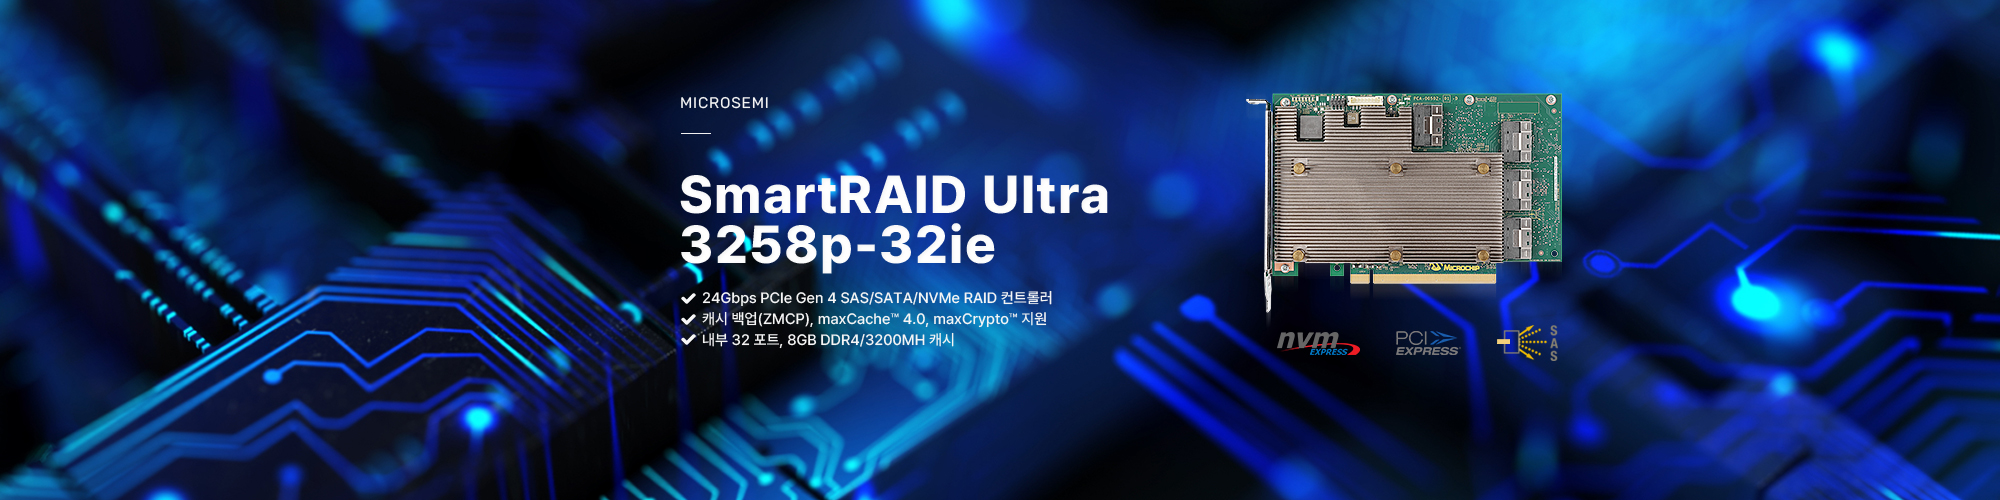 마이크로세미 아답텍 내장 4 포트12Gbps PCIe Gen3 SmartRAID 컨트롤러, SmartRAID 3101-4i 제품보러가기